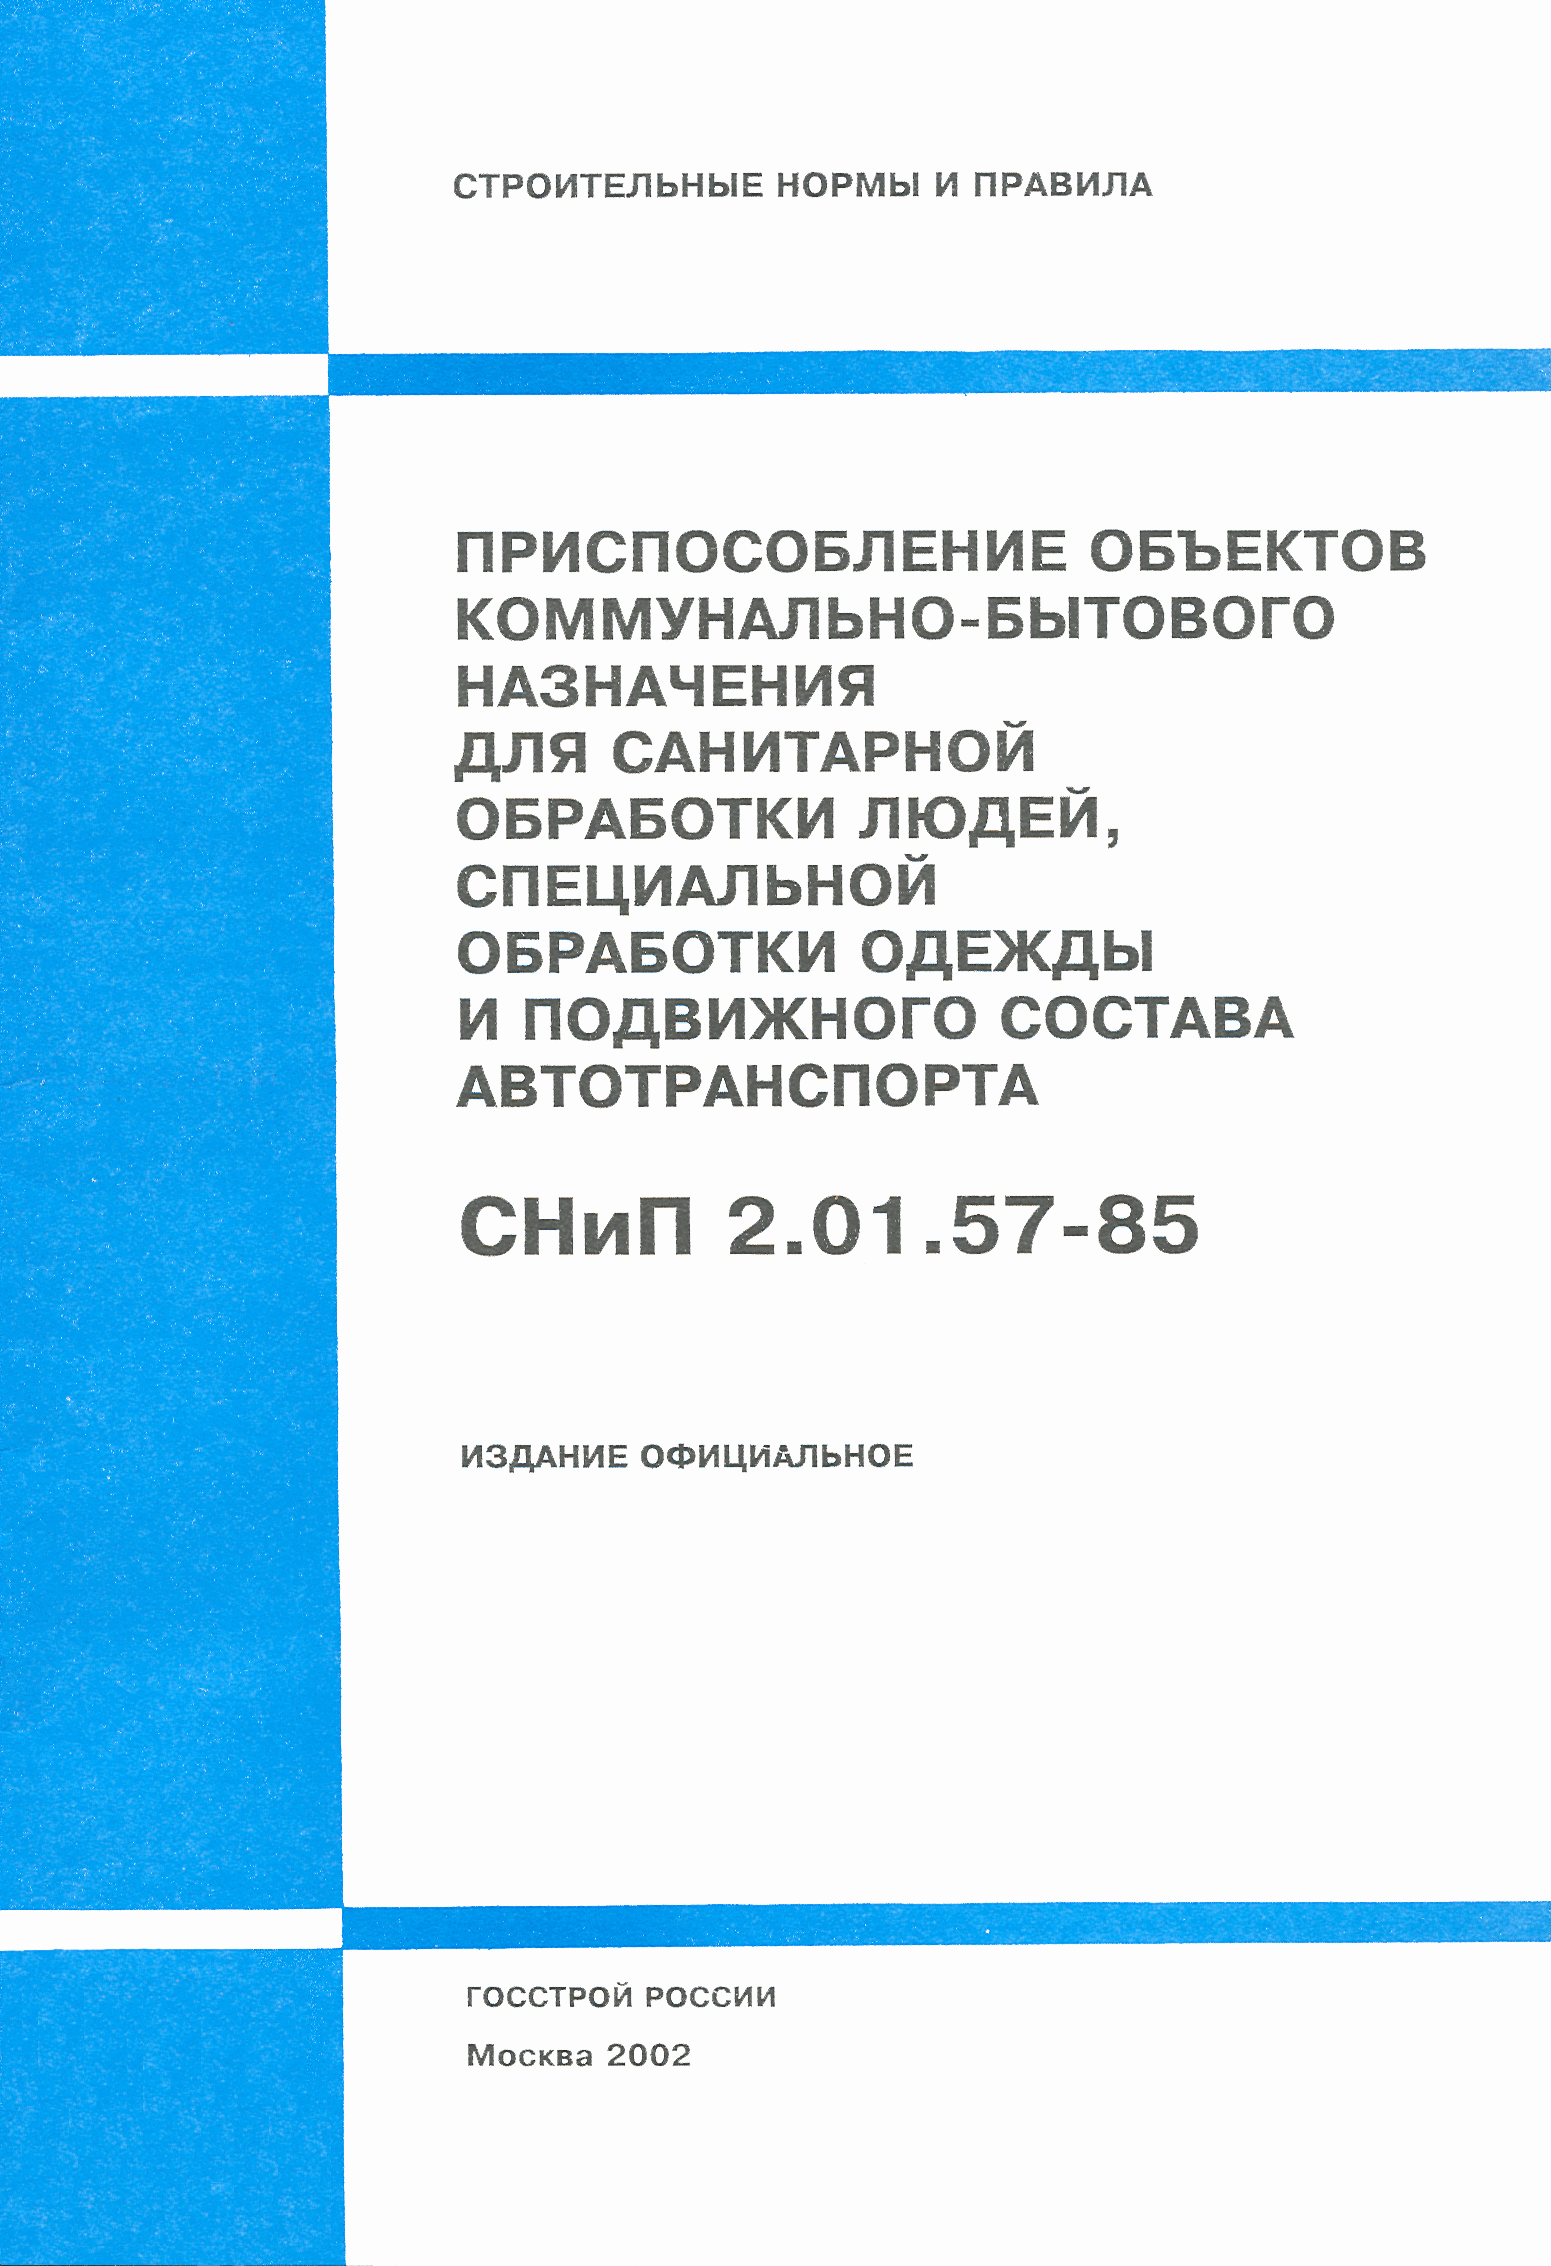 СНиП 2.01.57-85